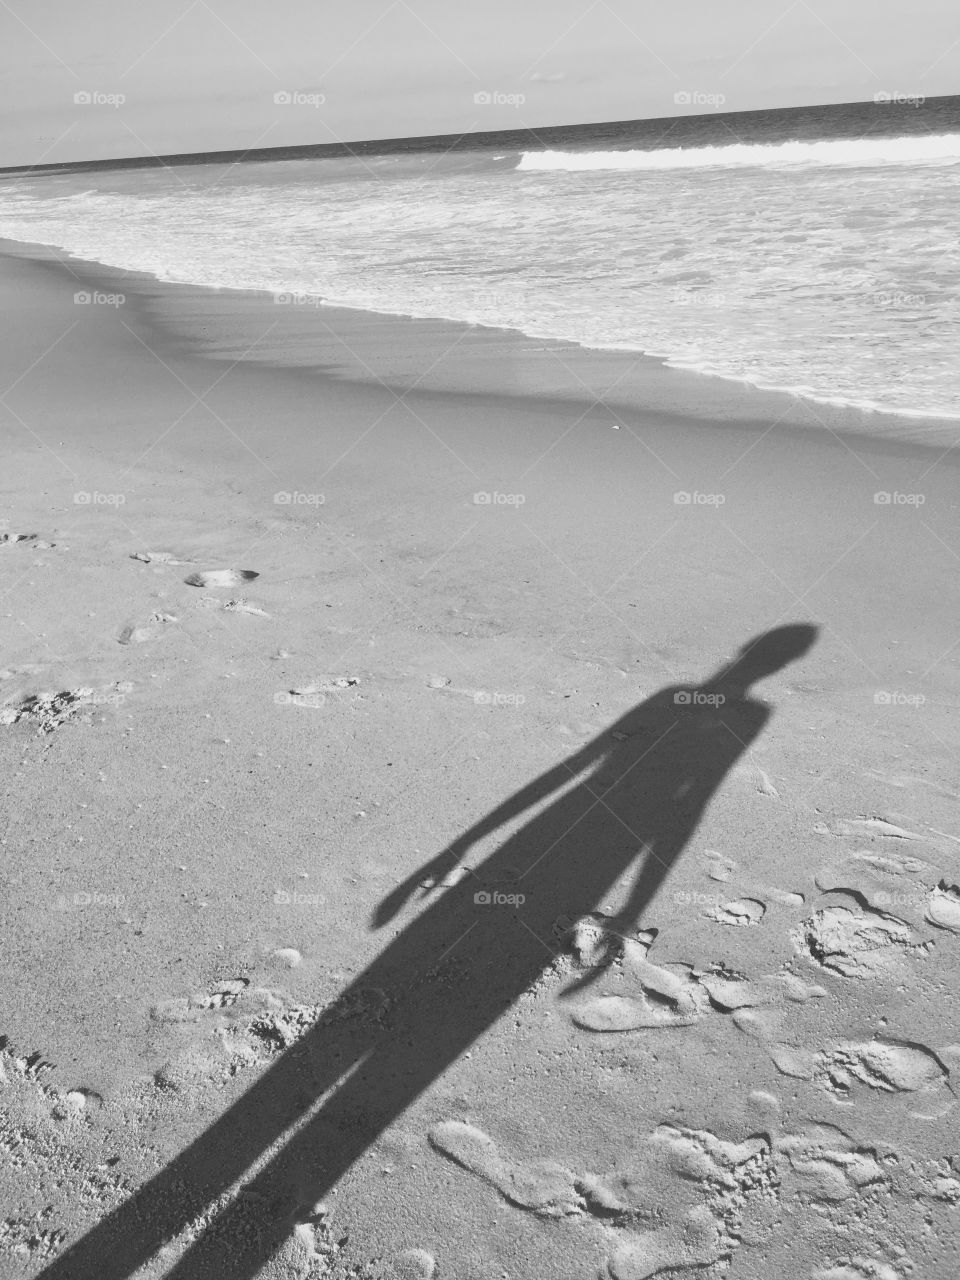 Shadow on beach 